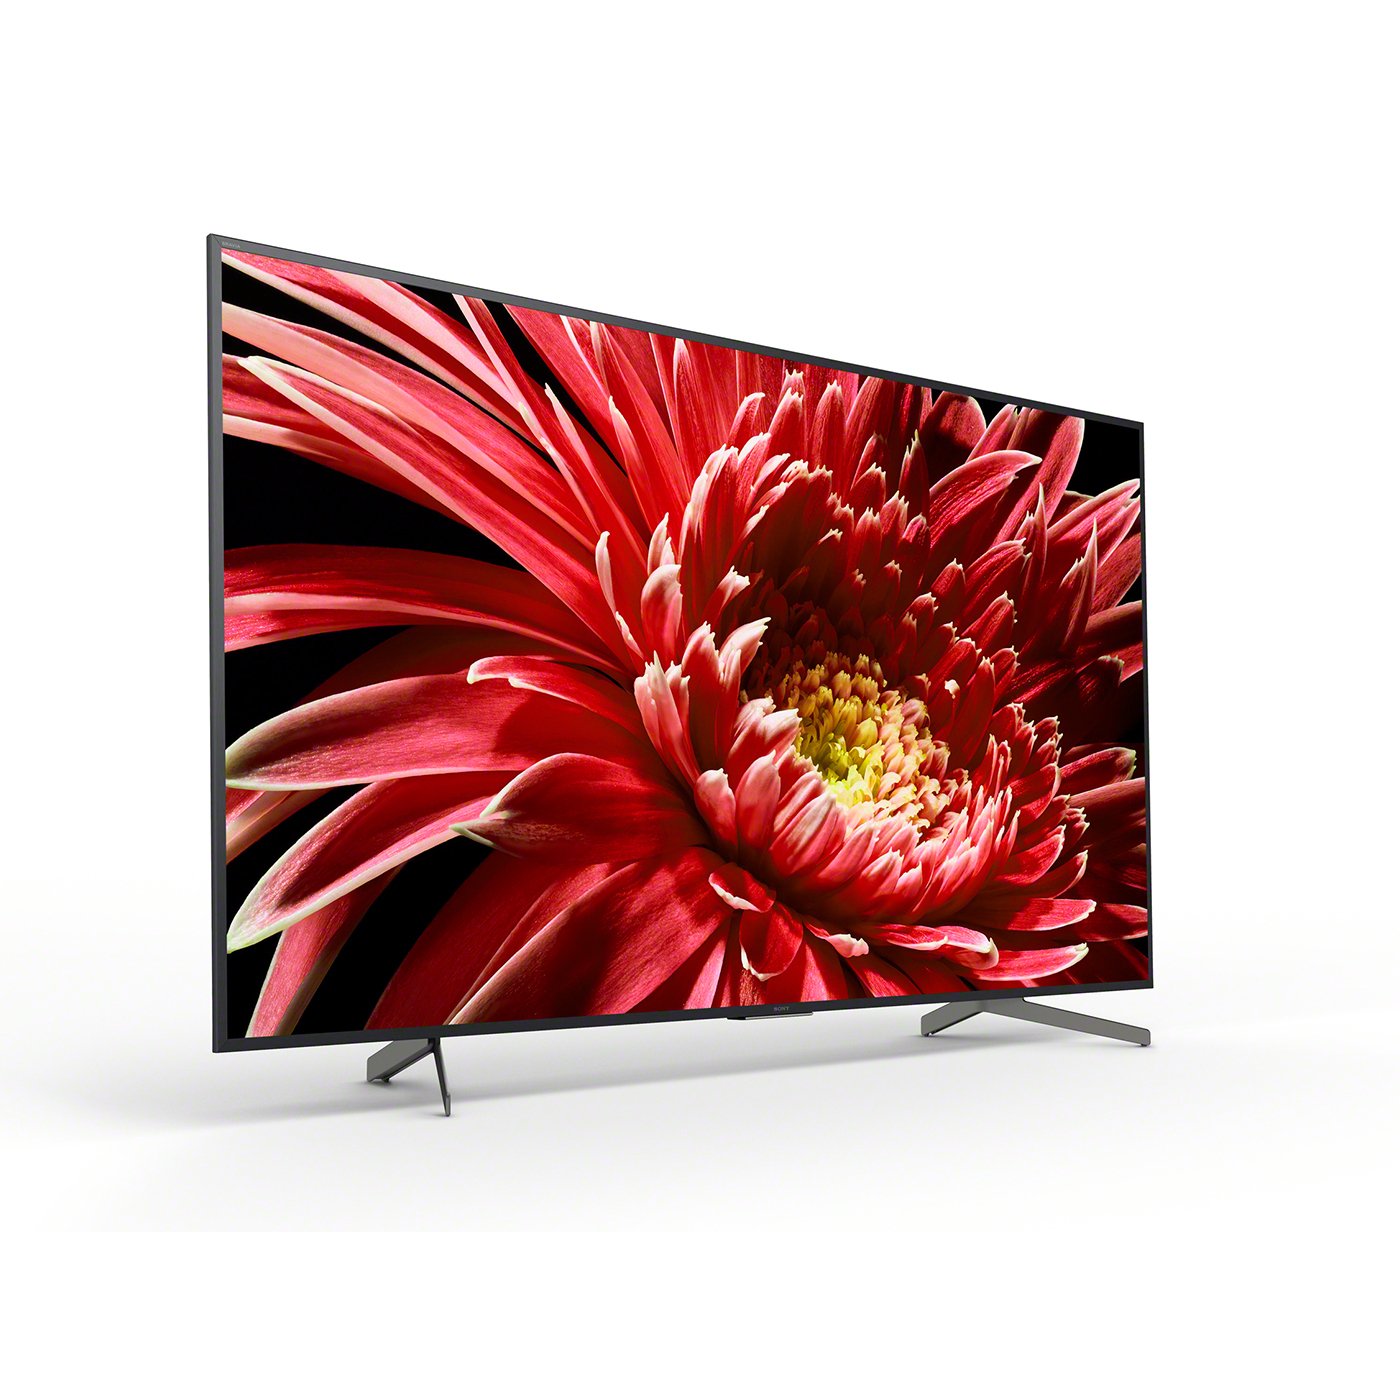 Sony 75 Inch KD75XG8505BU Smart 4K Ultra HD LED TV Review